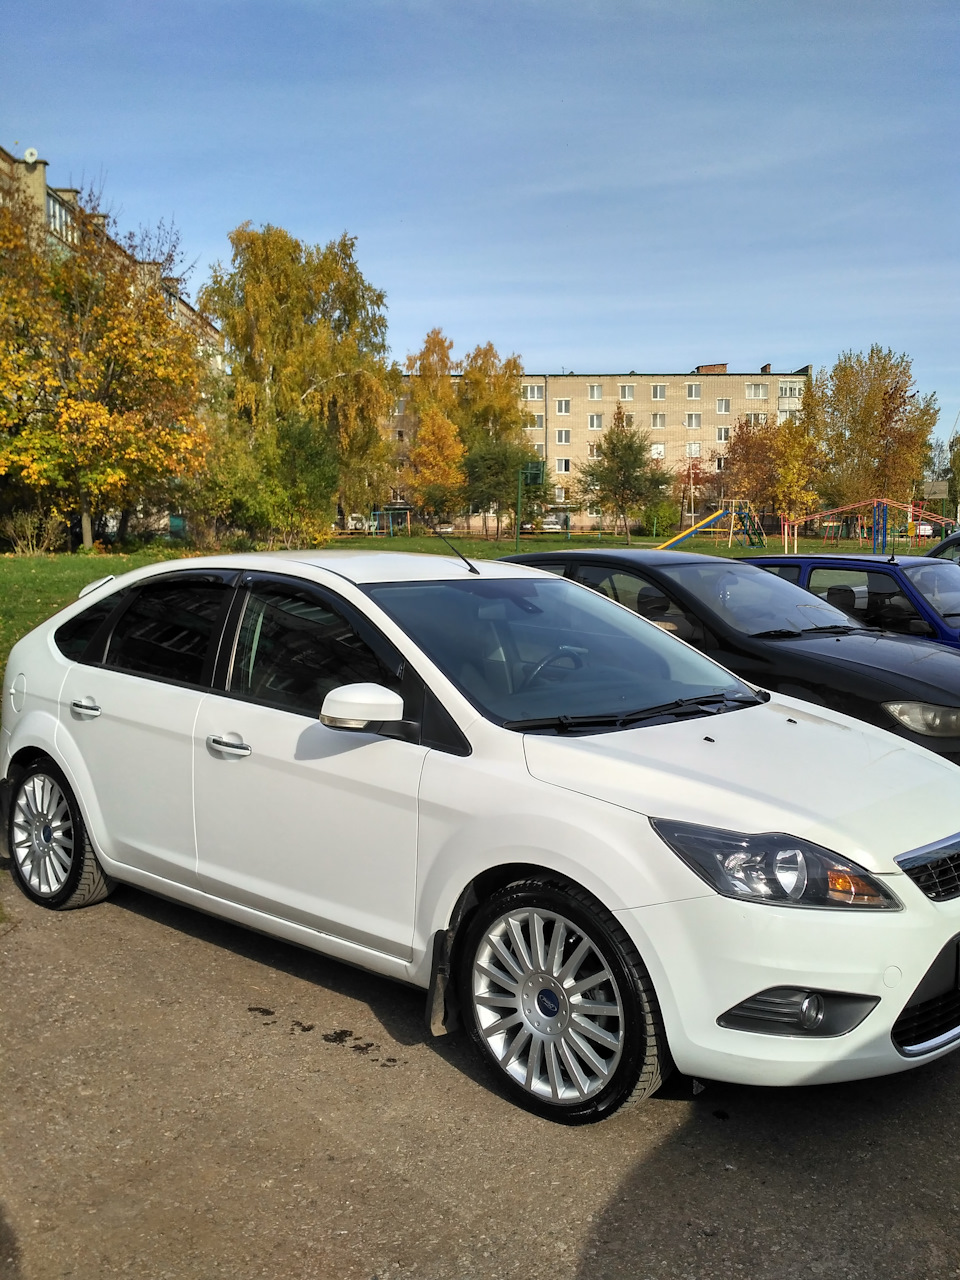 Купить продать Ford в ПМР Приднестровье: АвтоДнестр.Ком